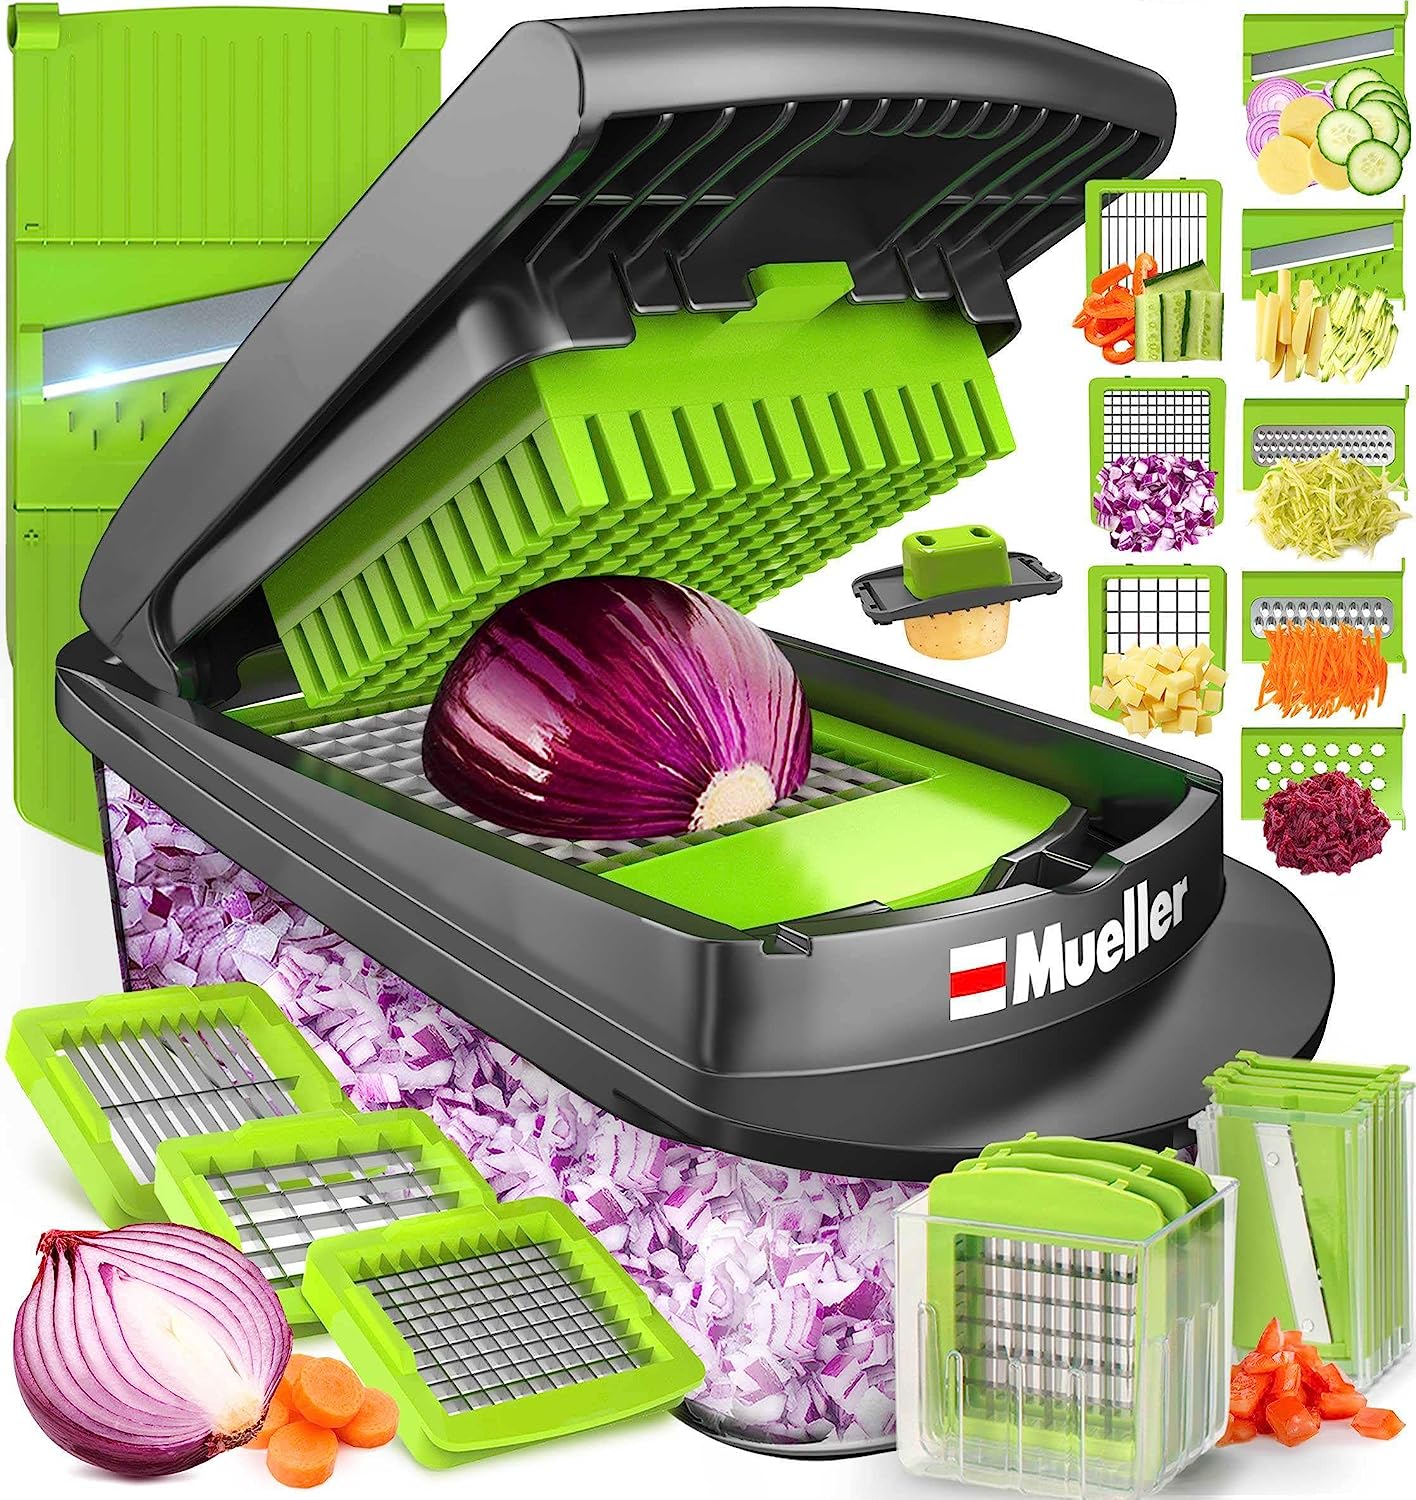 Vegetable Chopper, Onion Mincer, Cutter, Dicer, Egg Slicer with